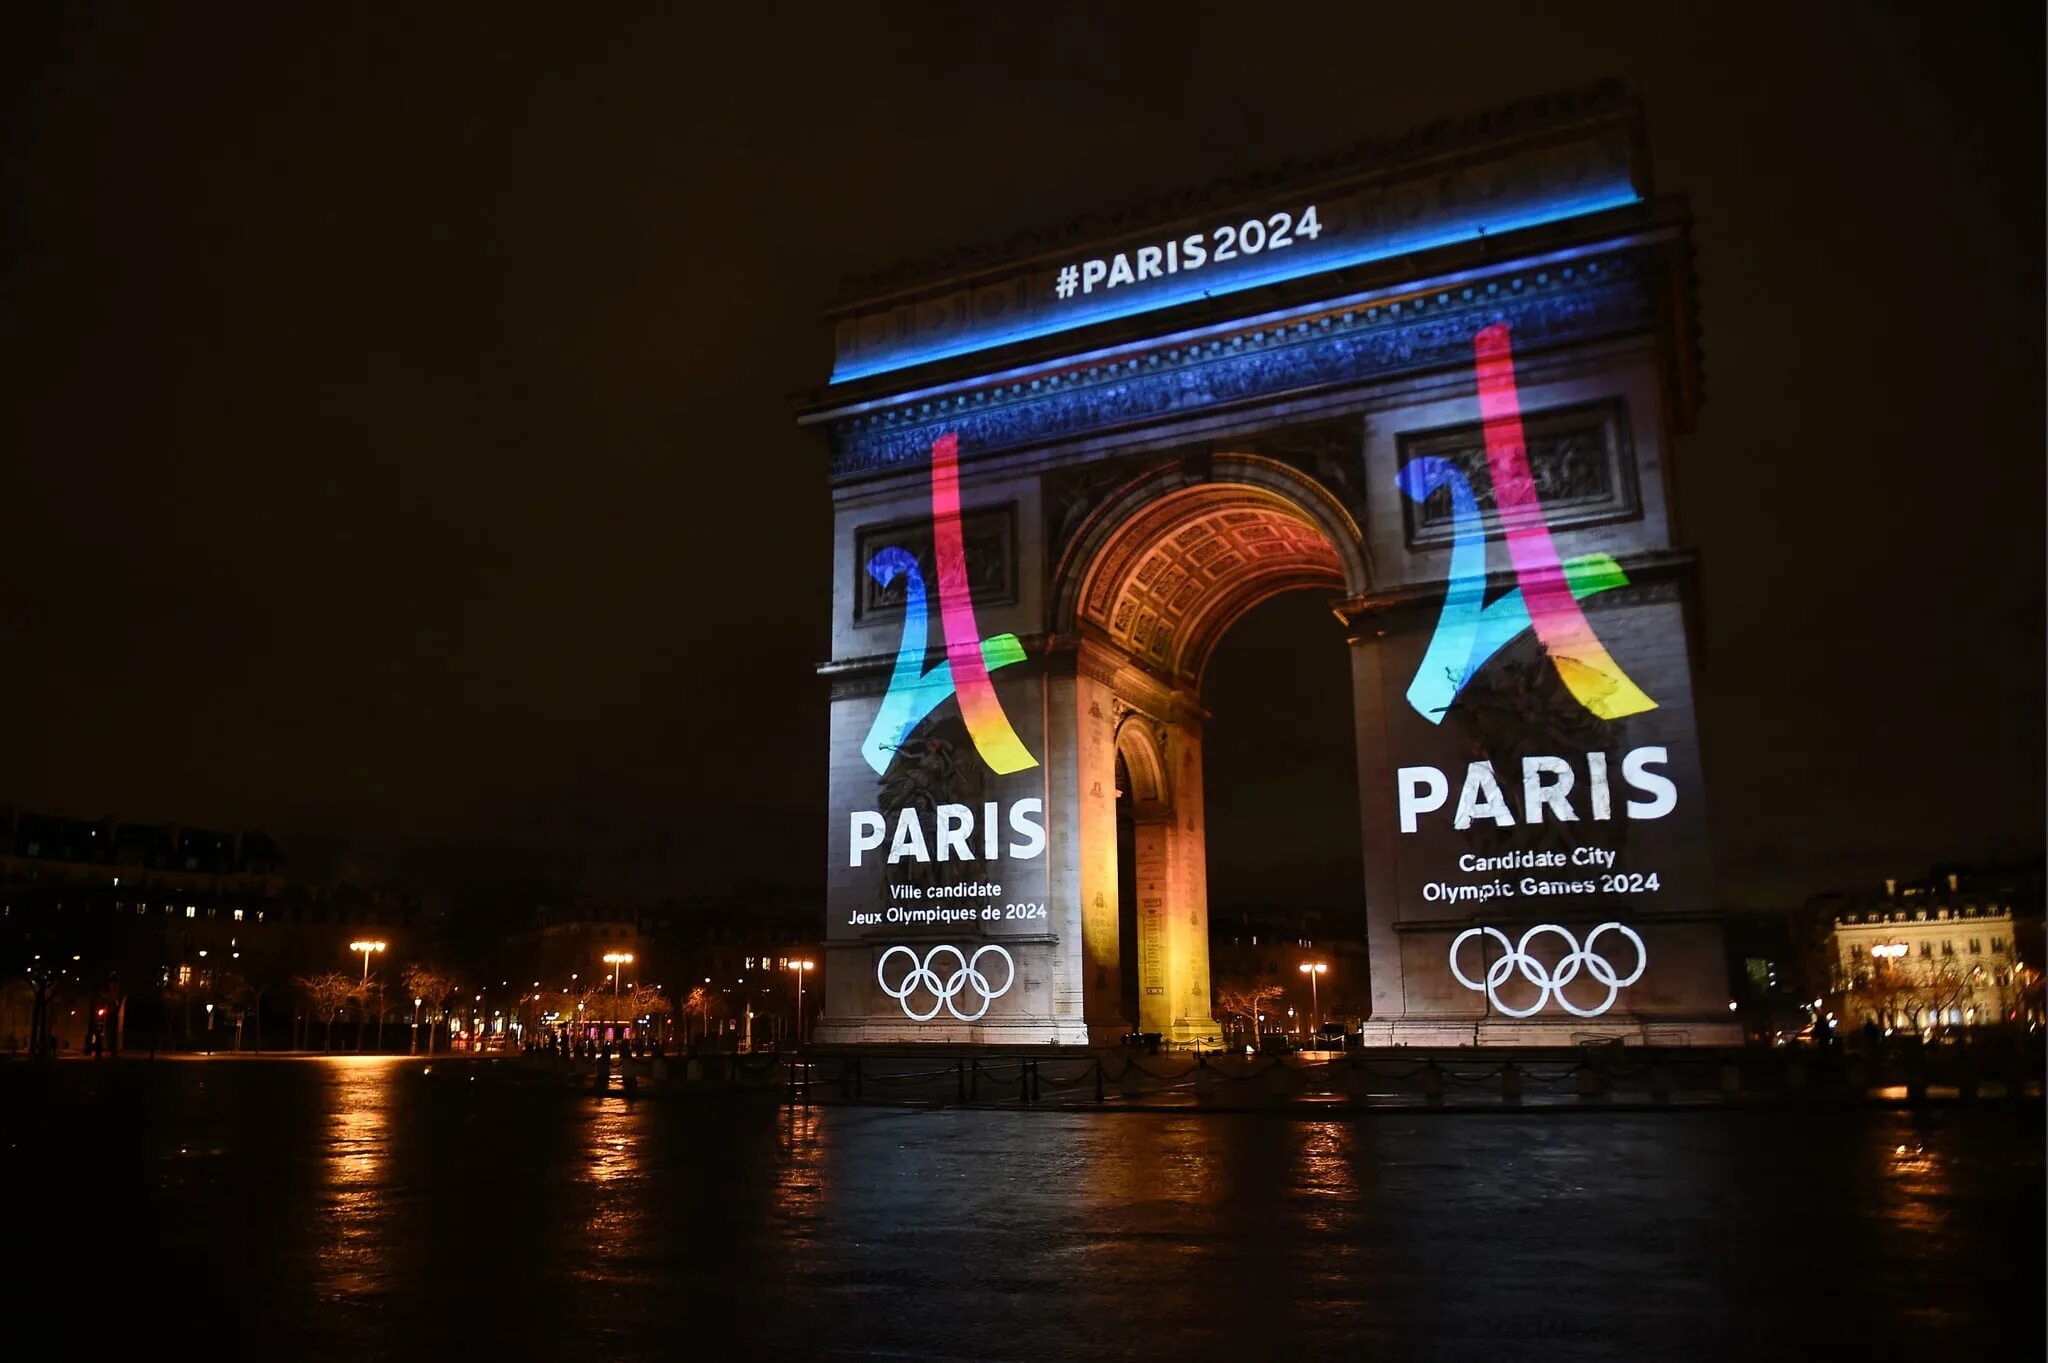 Найти песни 2024 года. Олимпийские игры в Париже 2024. Олимпийских игр–2024 в Париже лого. Париж 2024 логотип. Логотип олимпиады Париж.